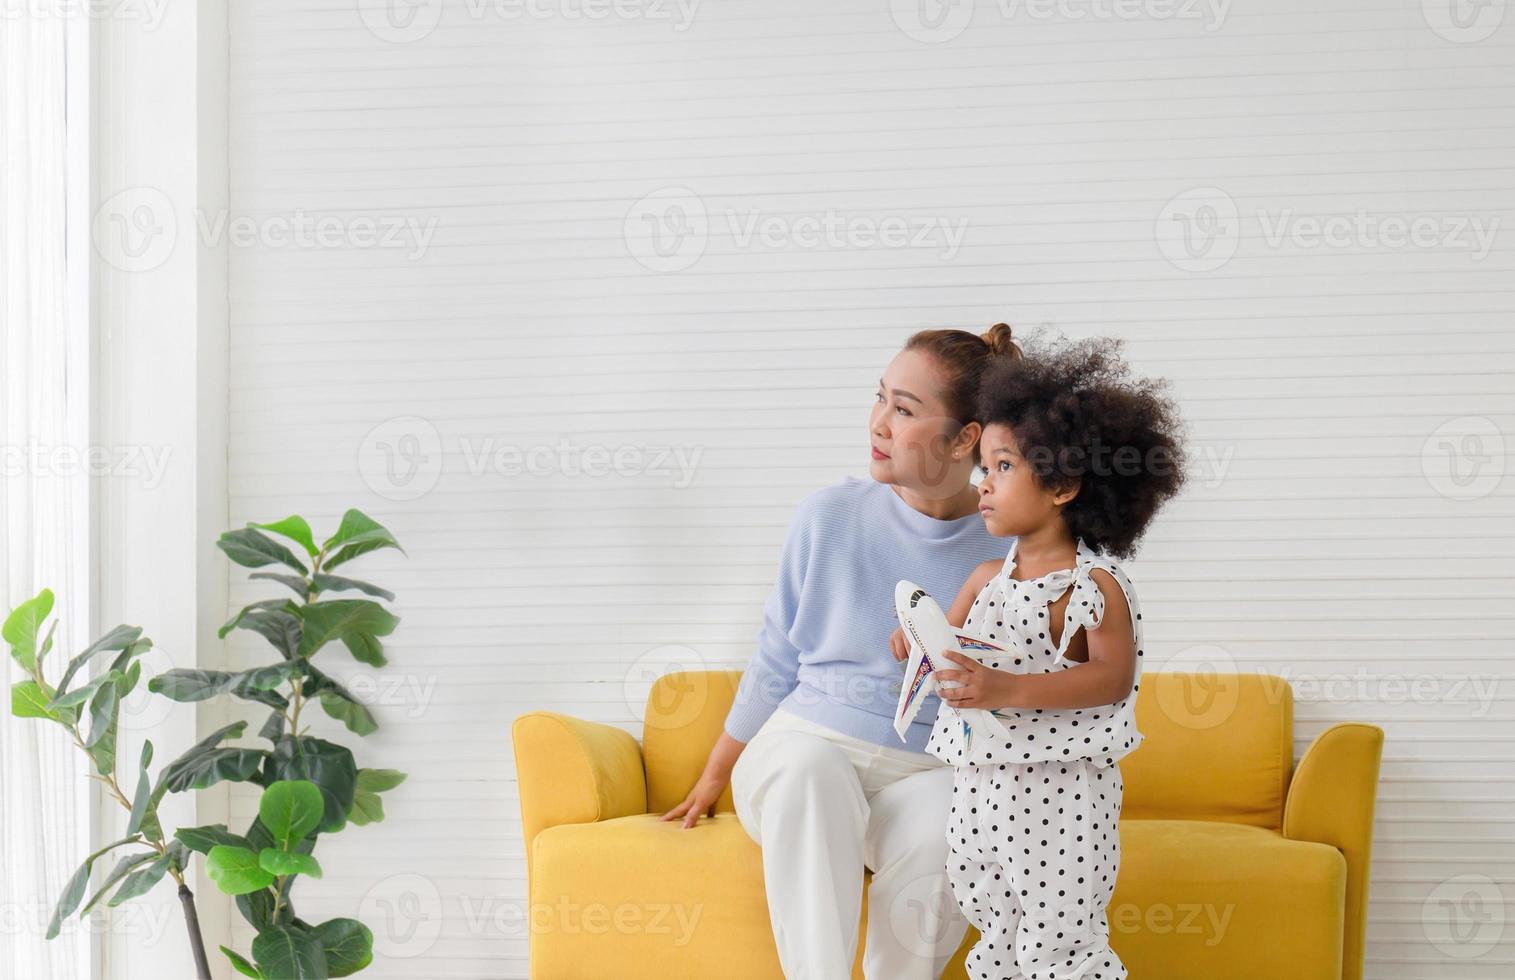 petite fille et grand-mère jouant joyeusement dans le salon, grand-mère et enfant regardant dehors par la fenêtre photo